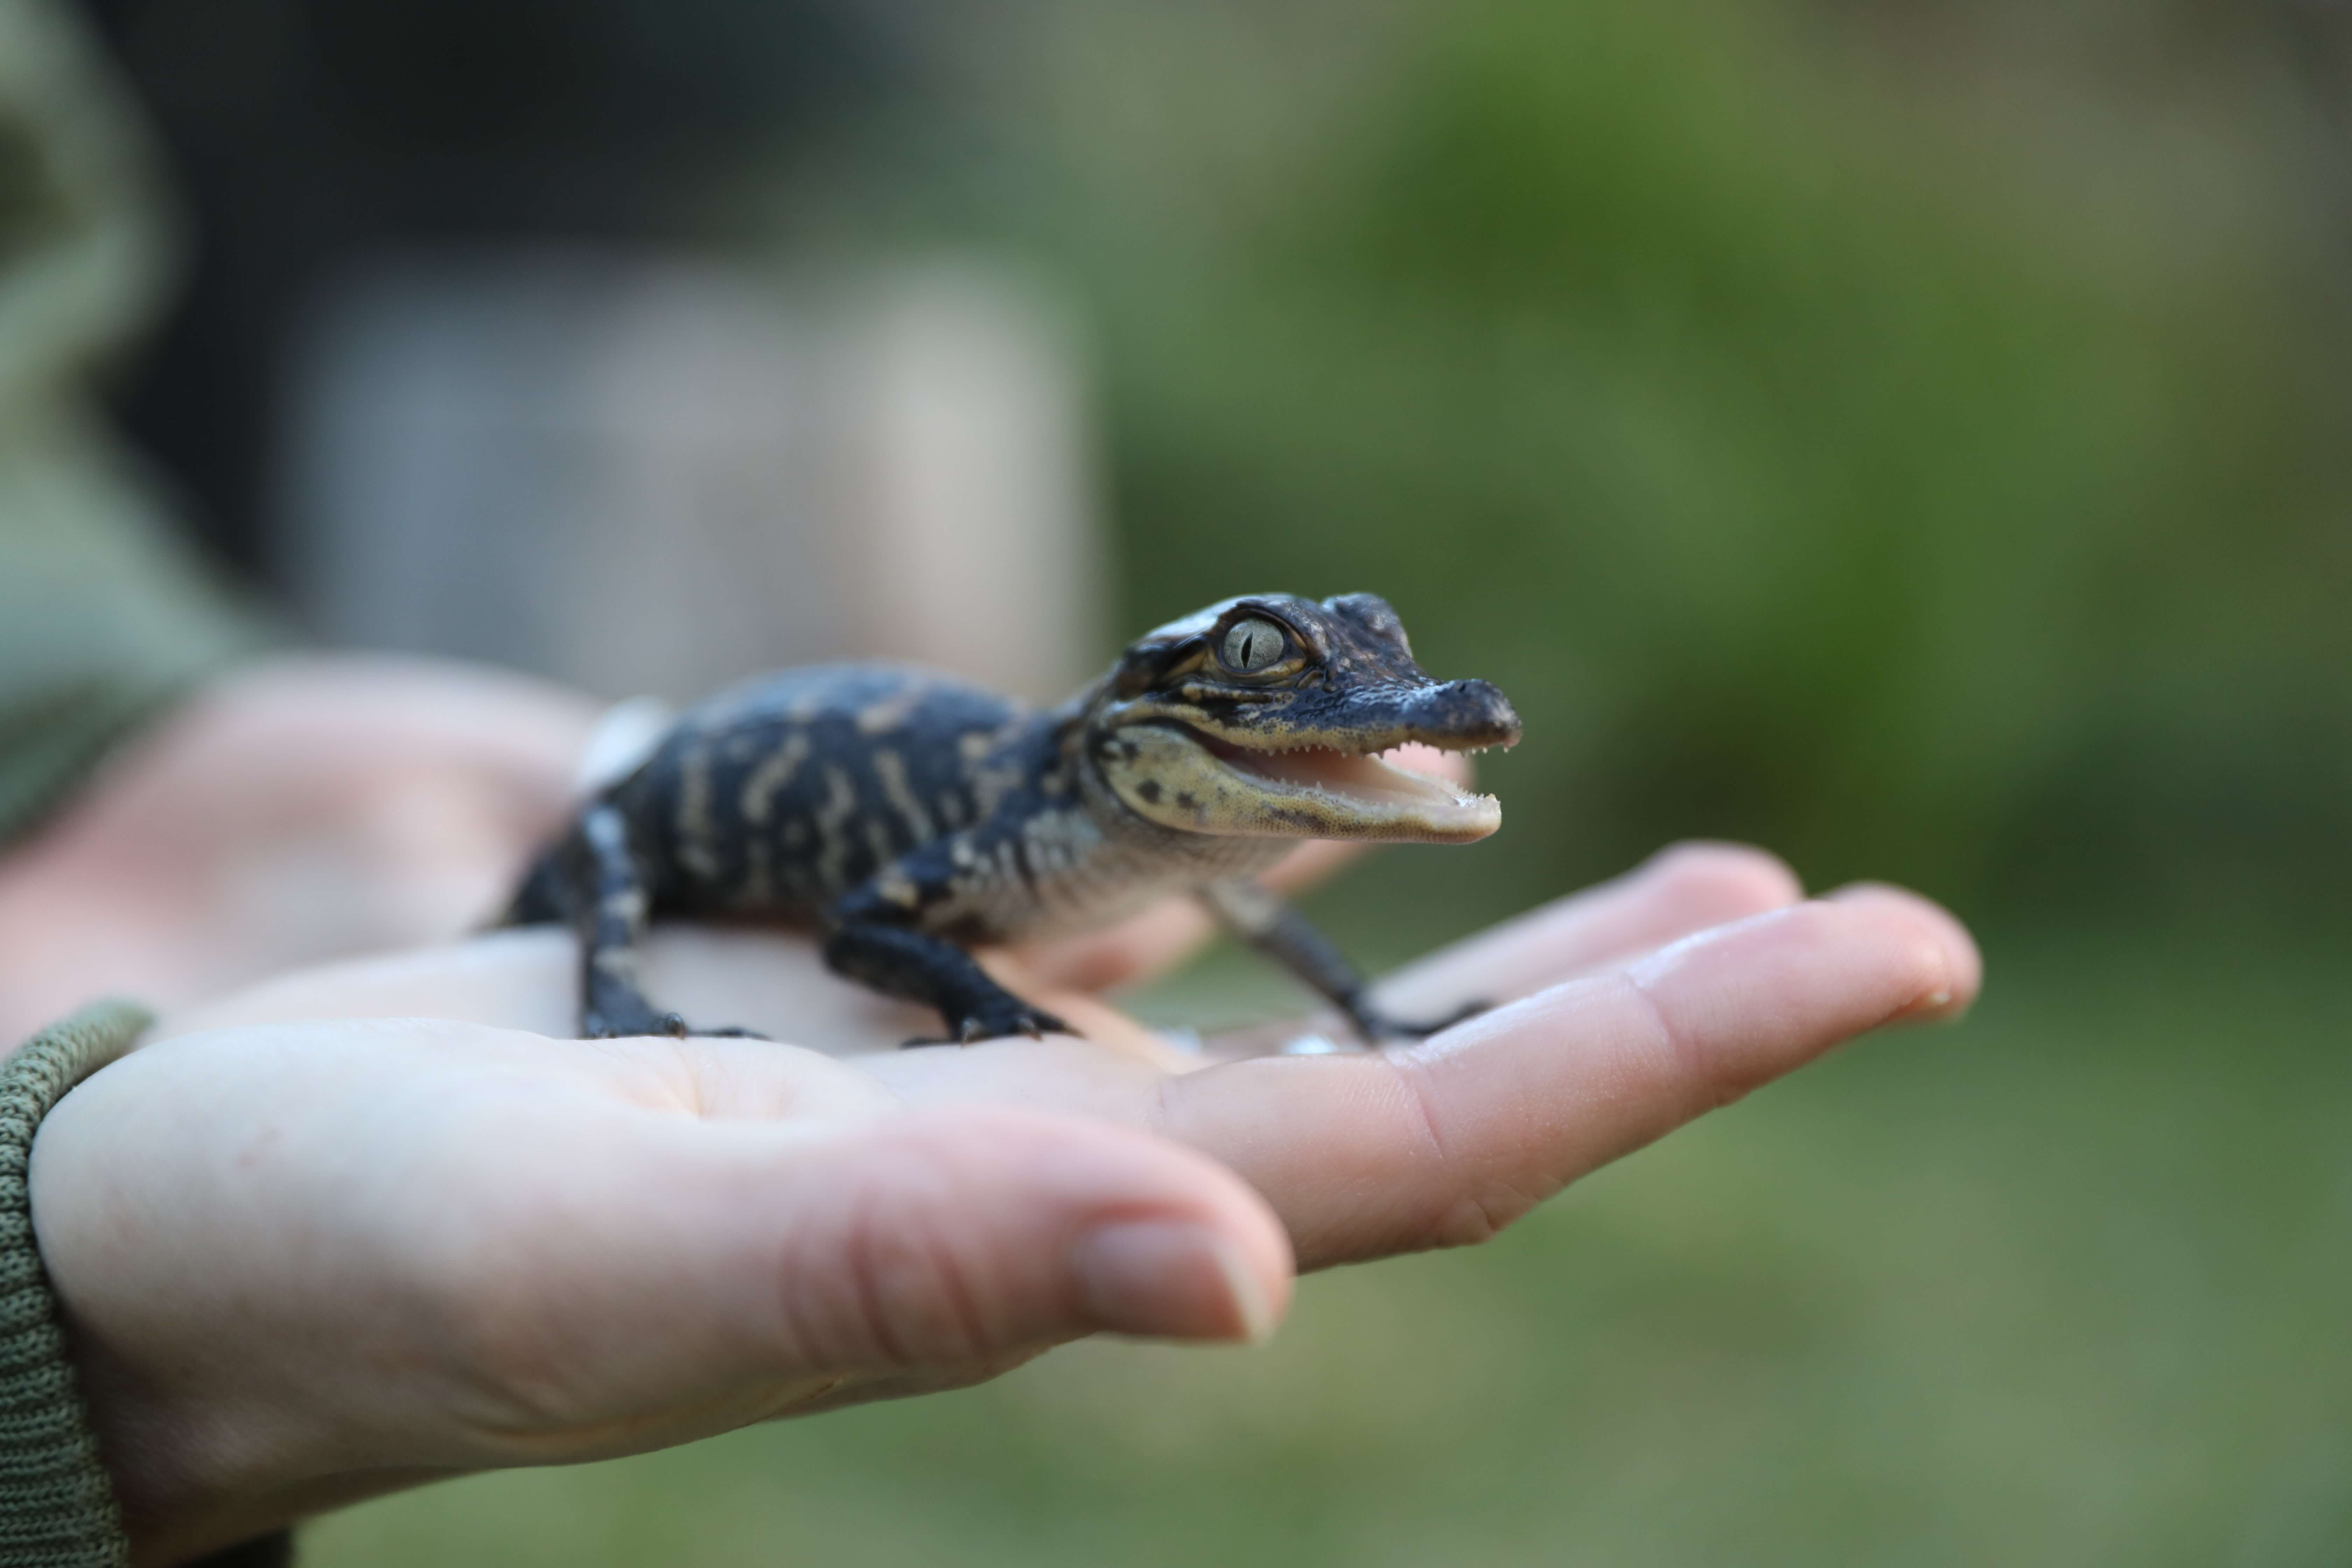 alligator hatchling in hand